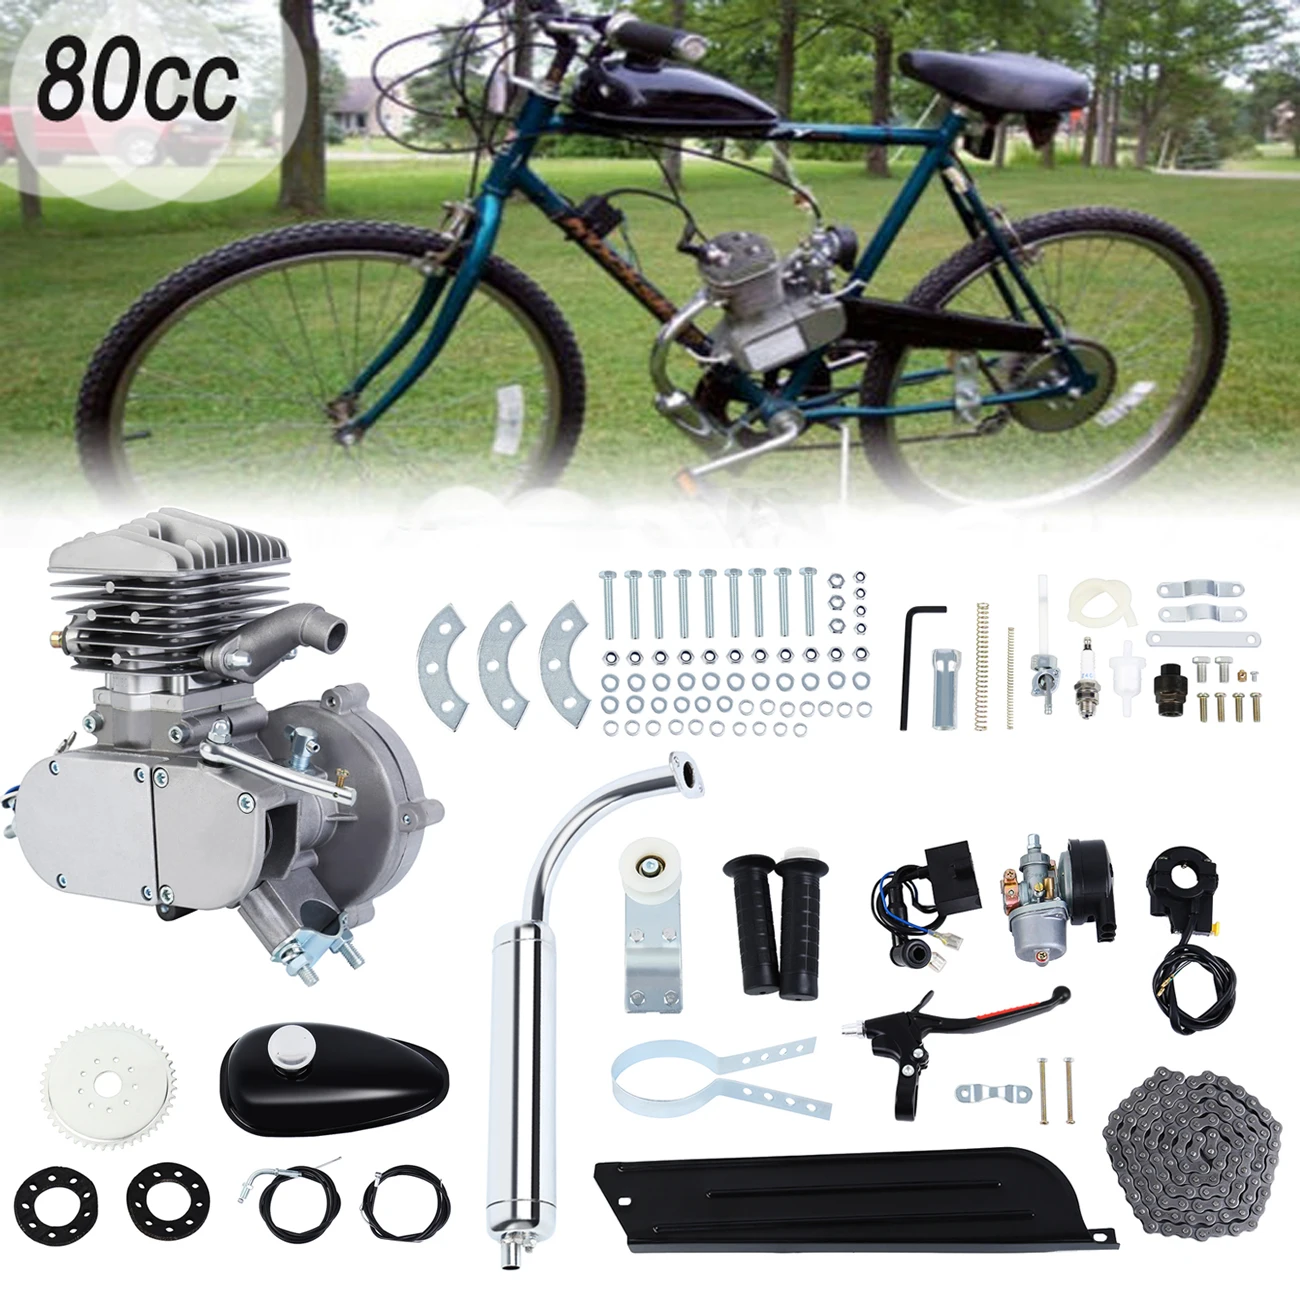 80cc Gasket Set Motorised Petrol Gas Bicycle Bike Motor Engine Pull start Kick 